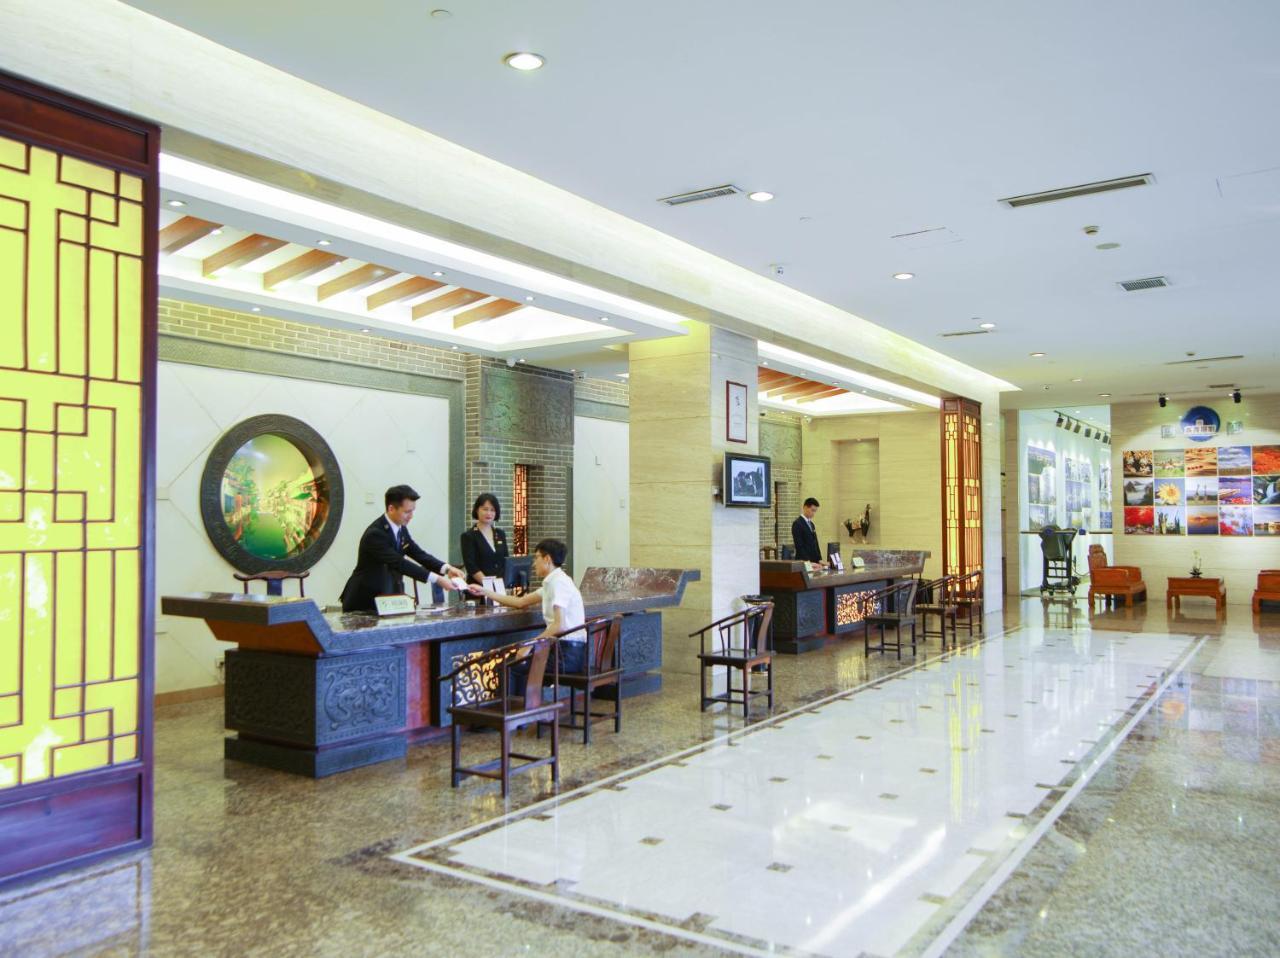 Narada Jiaxing Zhejiang Hotel Wuzhen Exterior photo